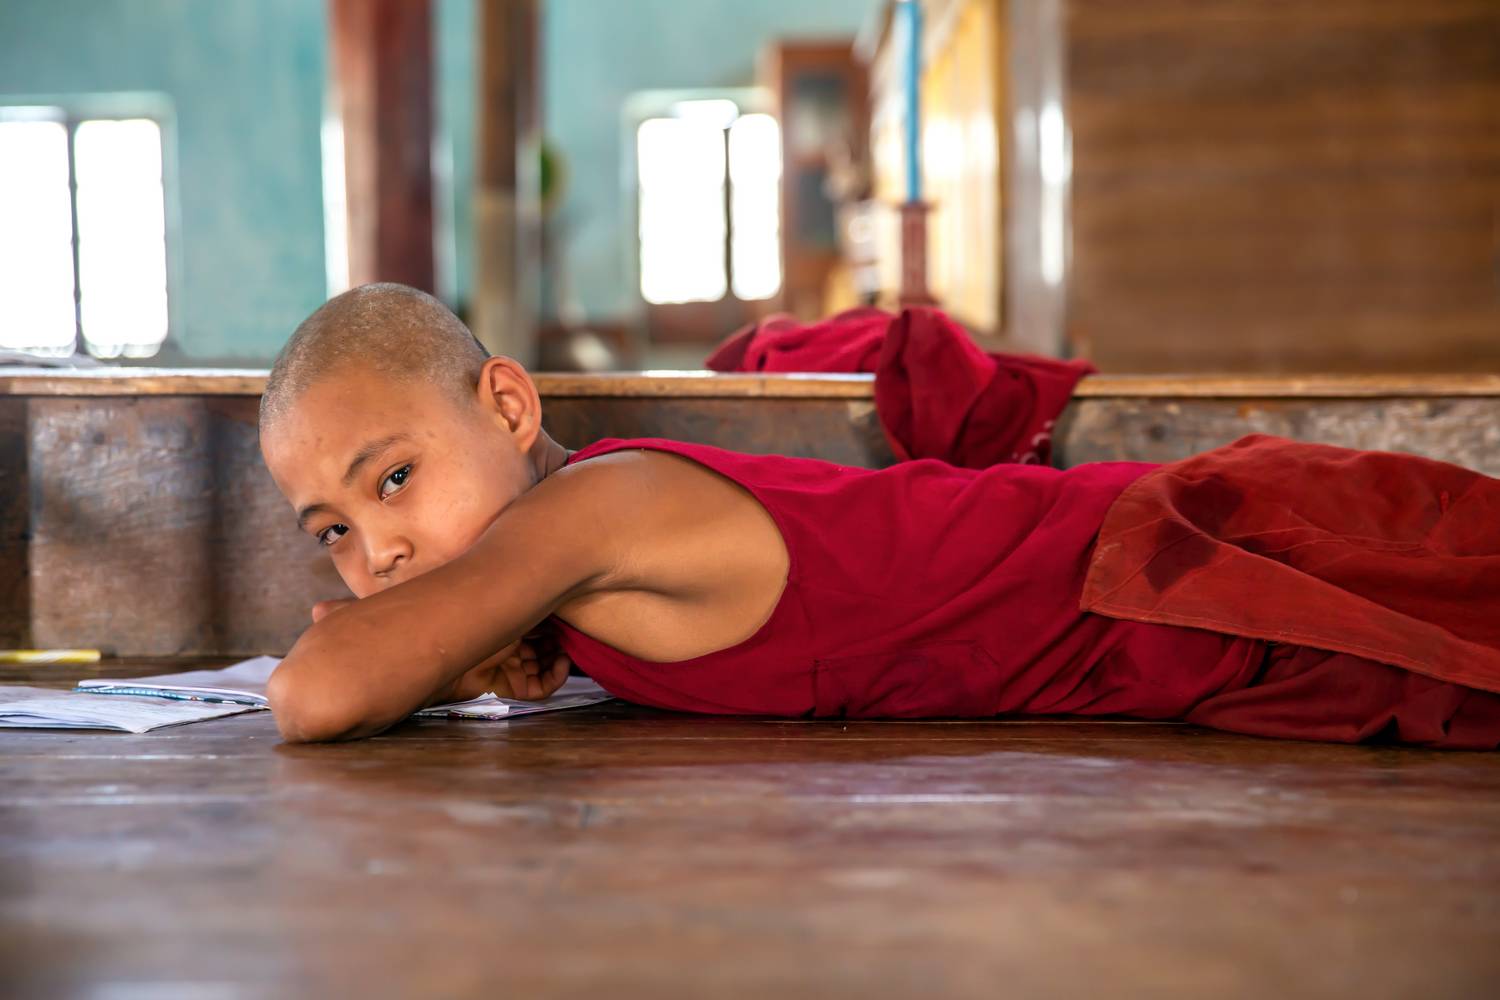 Buddhistischer Mönch in Myanmar, Asien from Miro May